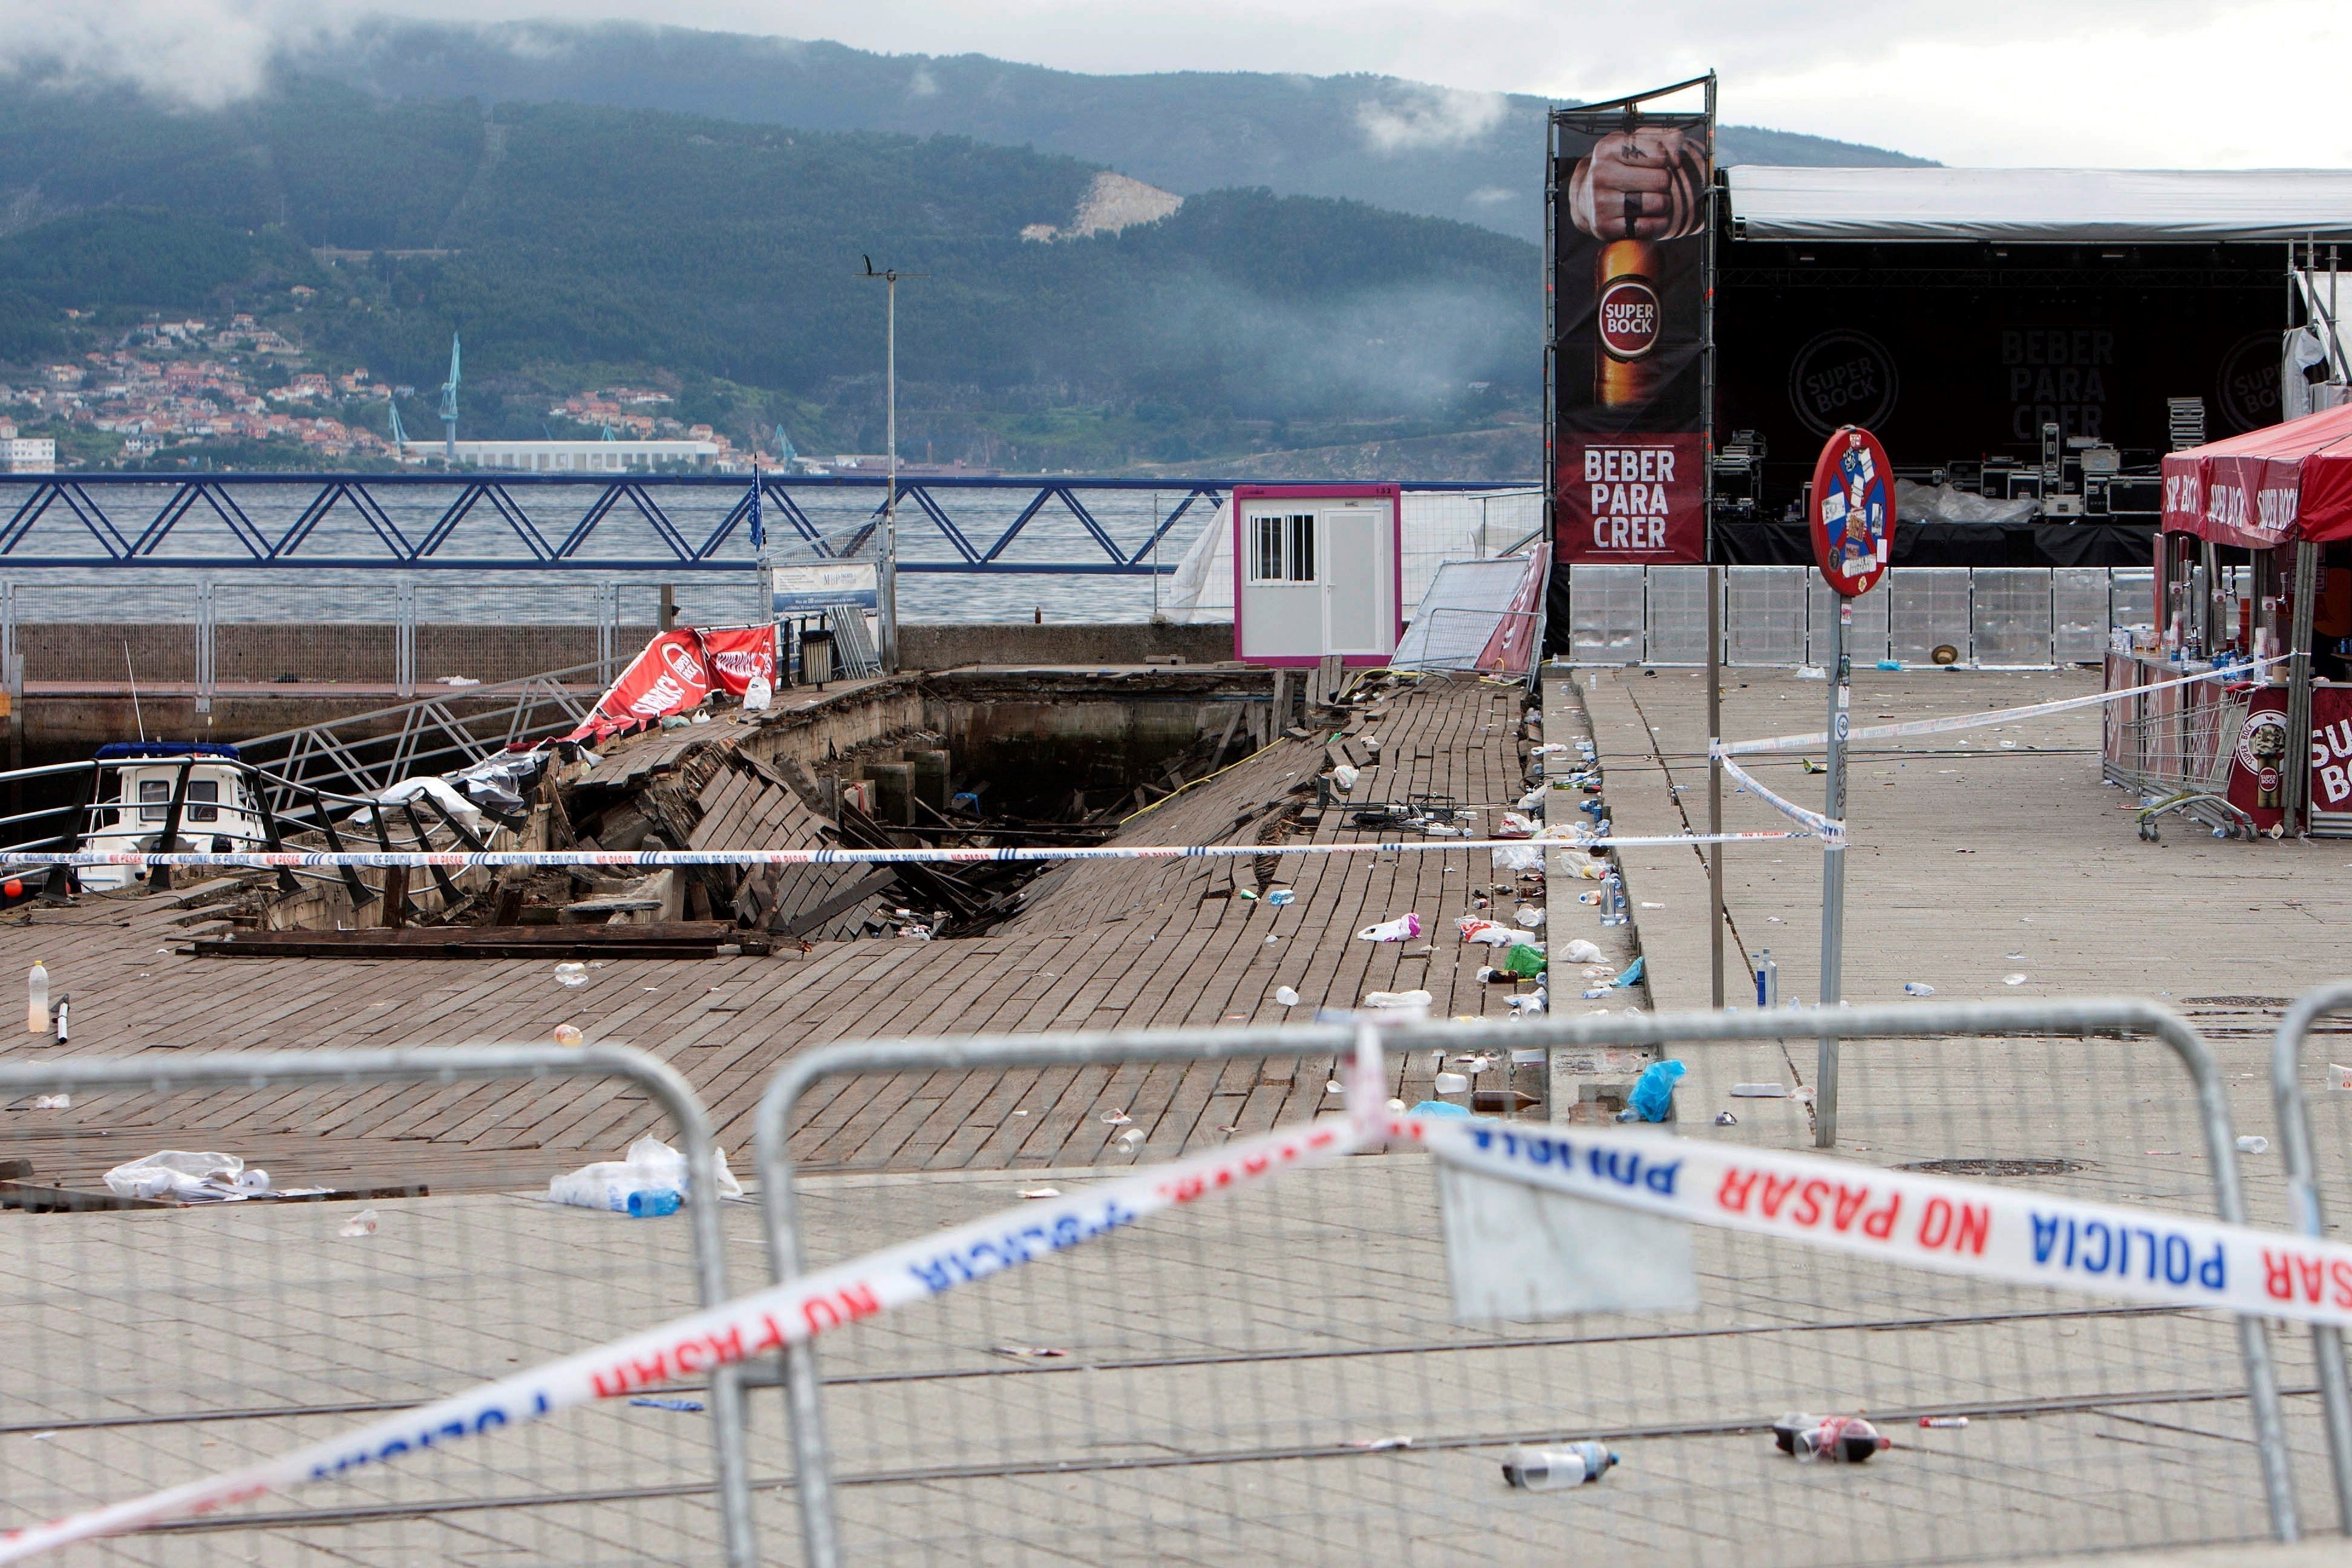 La pasarela de madera del puerto de Vigo que se desplomó durante una de las actuaciones del festival de deporte y cultura urbana "O Marisquiño" . EFE